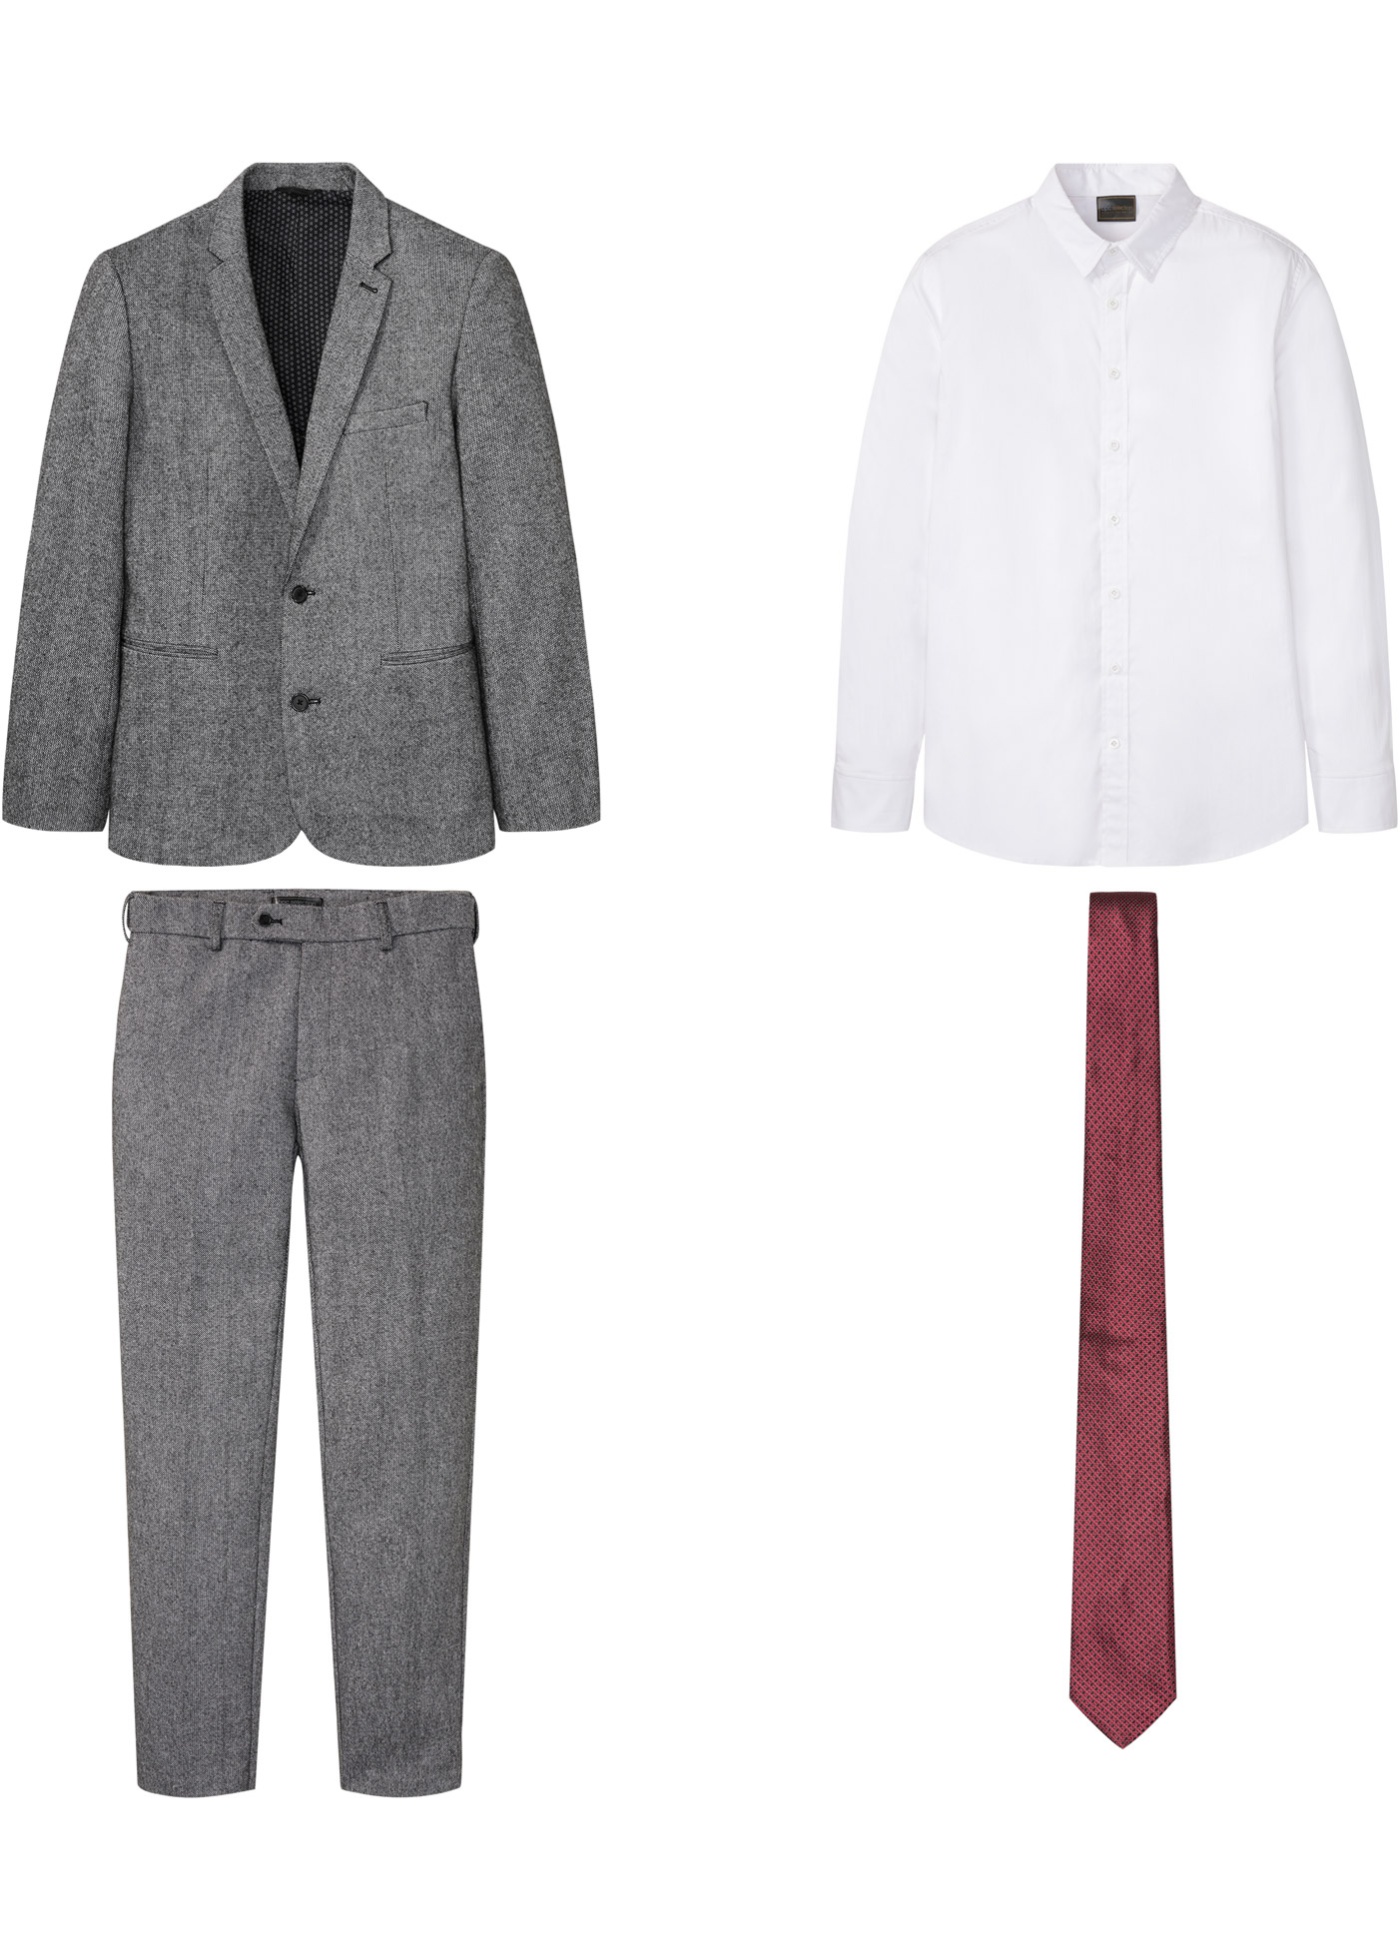 Oblek (4-dielny), sako, nohavice, košeľa, kravata, Slim Fit